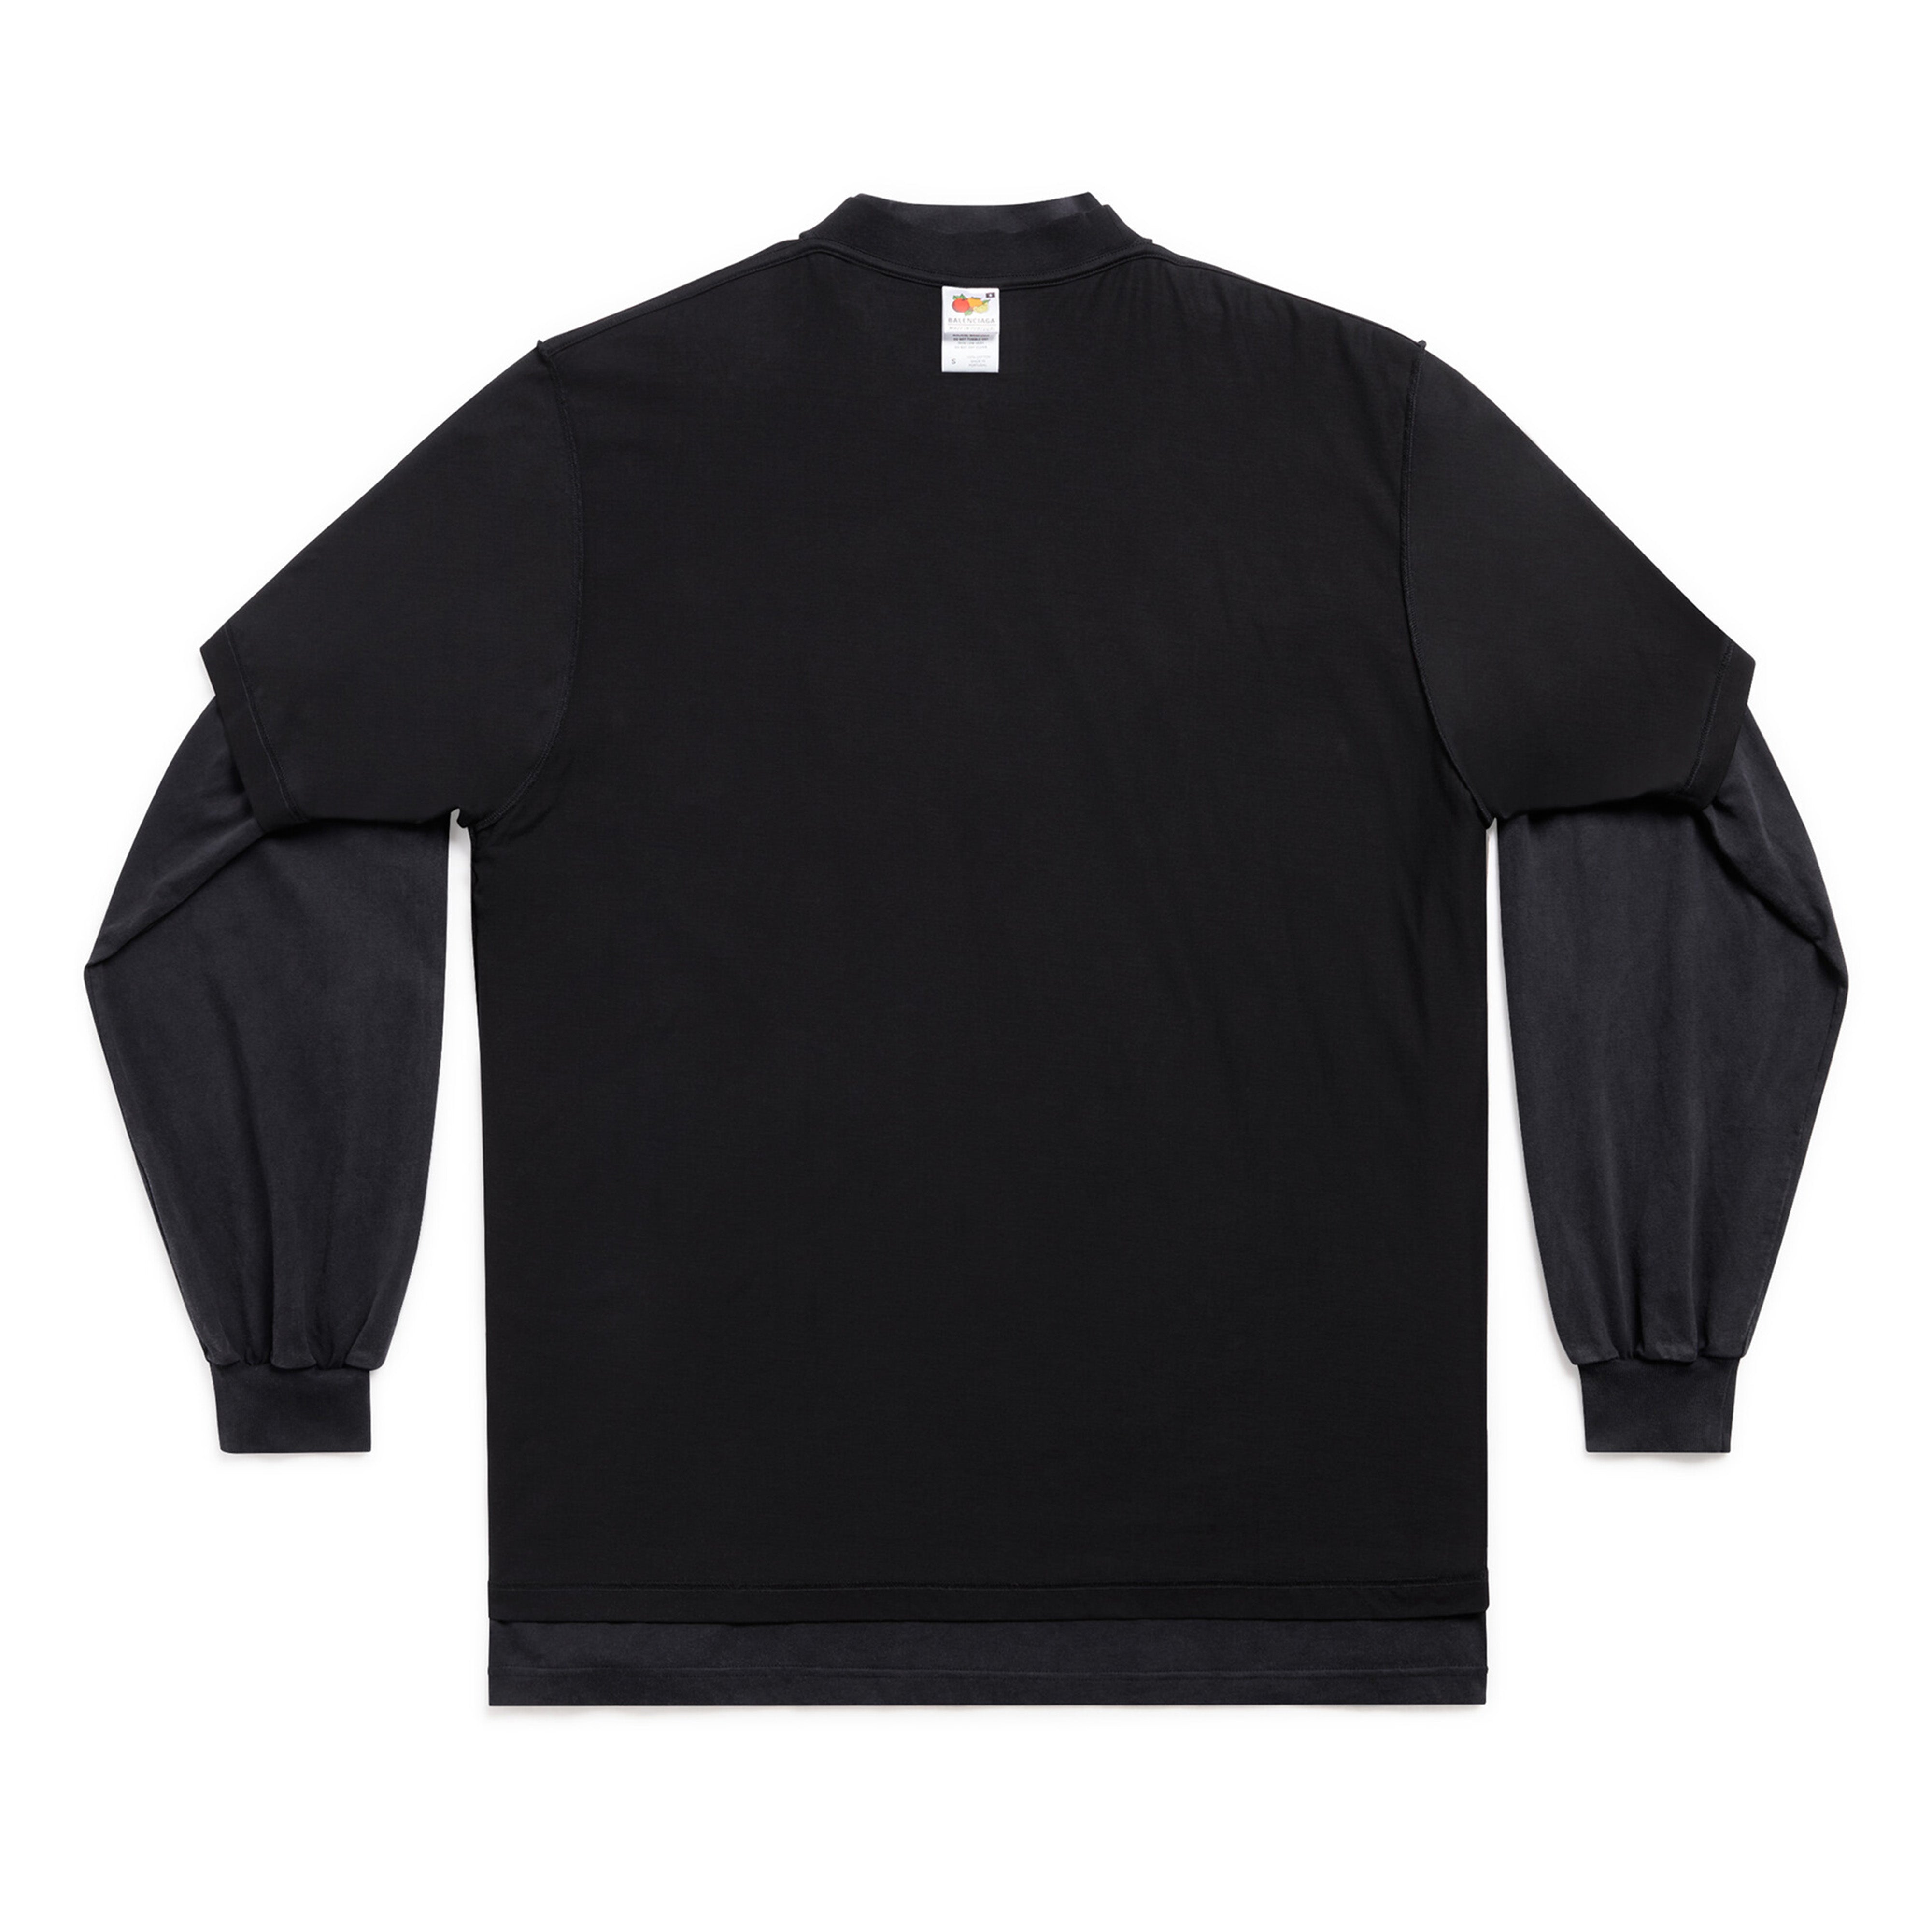 Kanye West Balenciaga Black DONDA Double Layer Longsleeve Shirt XL  AUTHENTIC  eBay